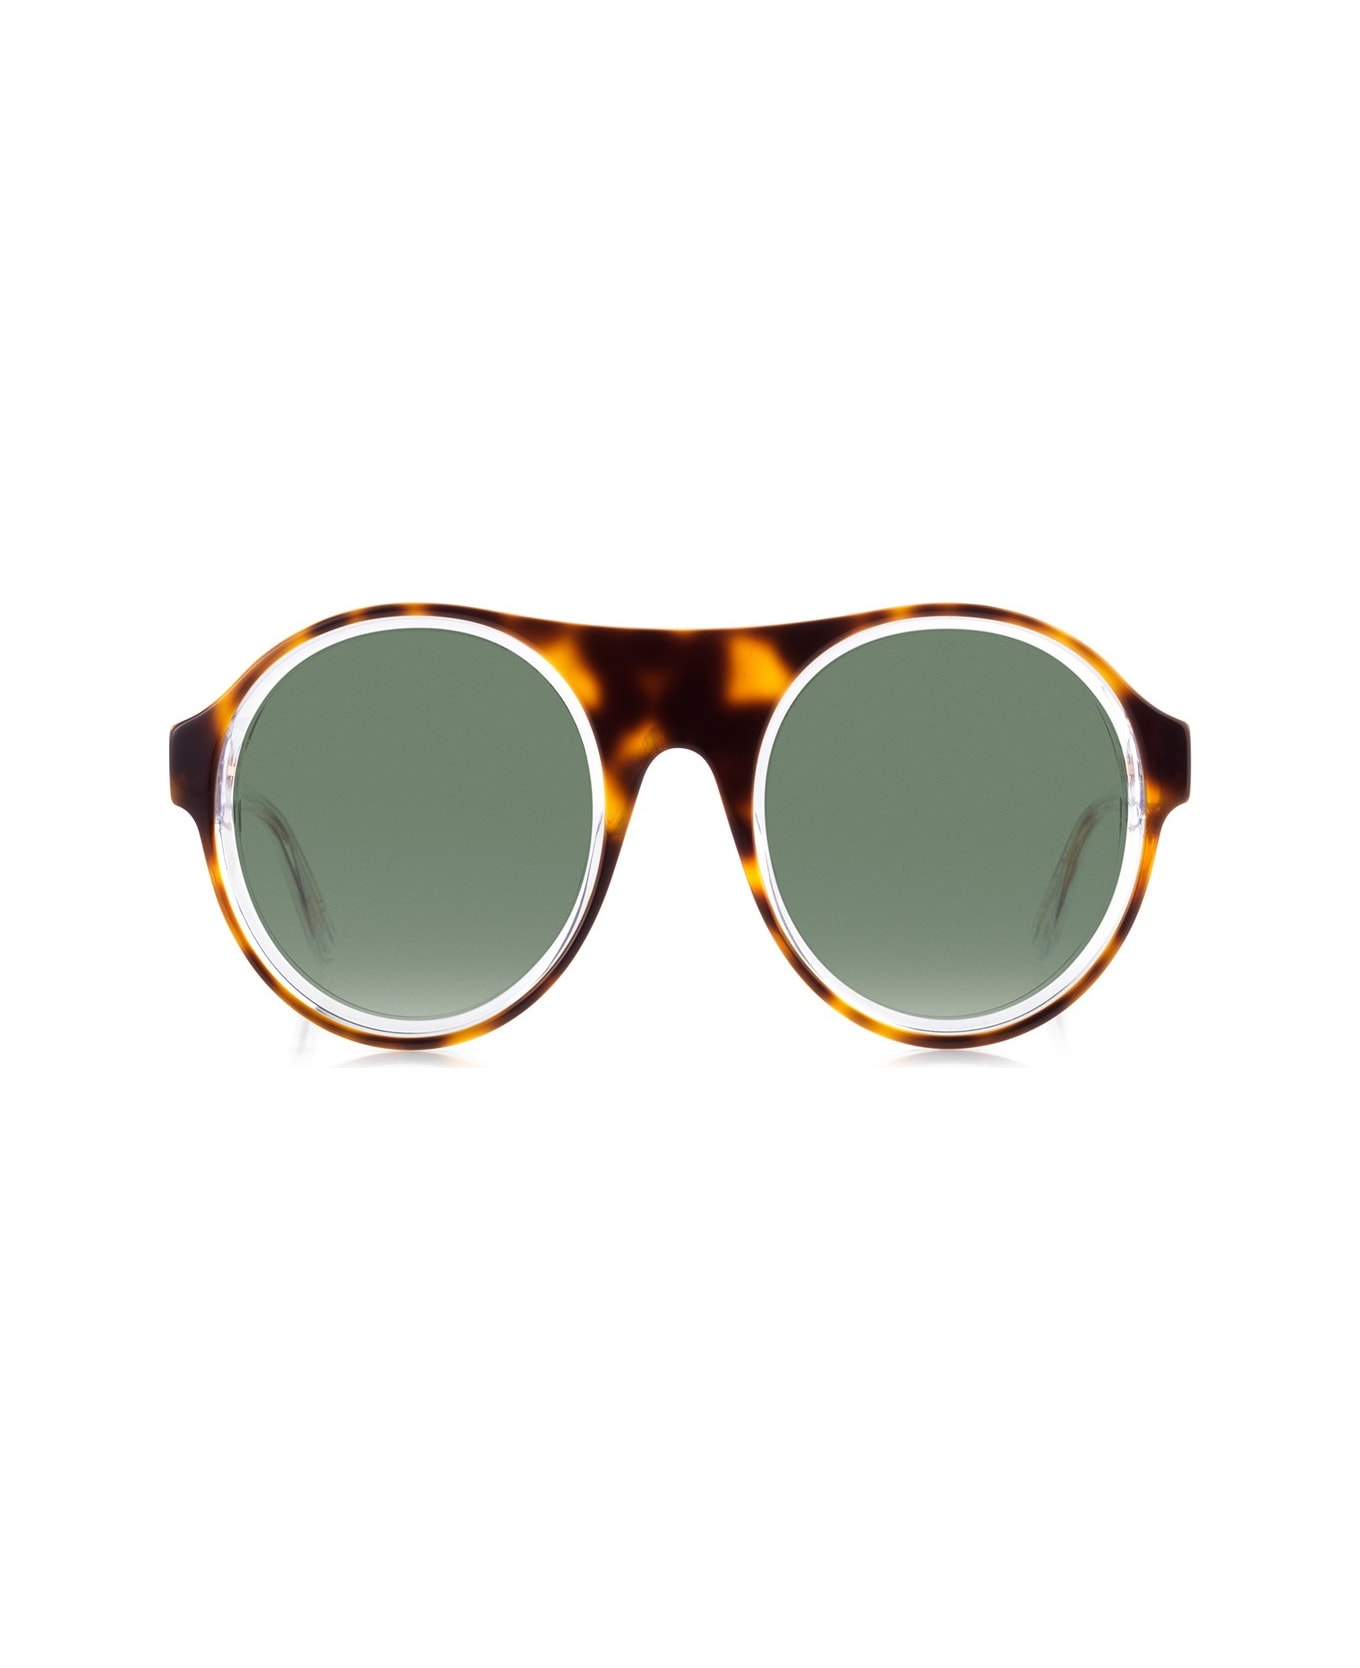 Robert La Roche Rlr S300 Sunglasses - Marrone